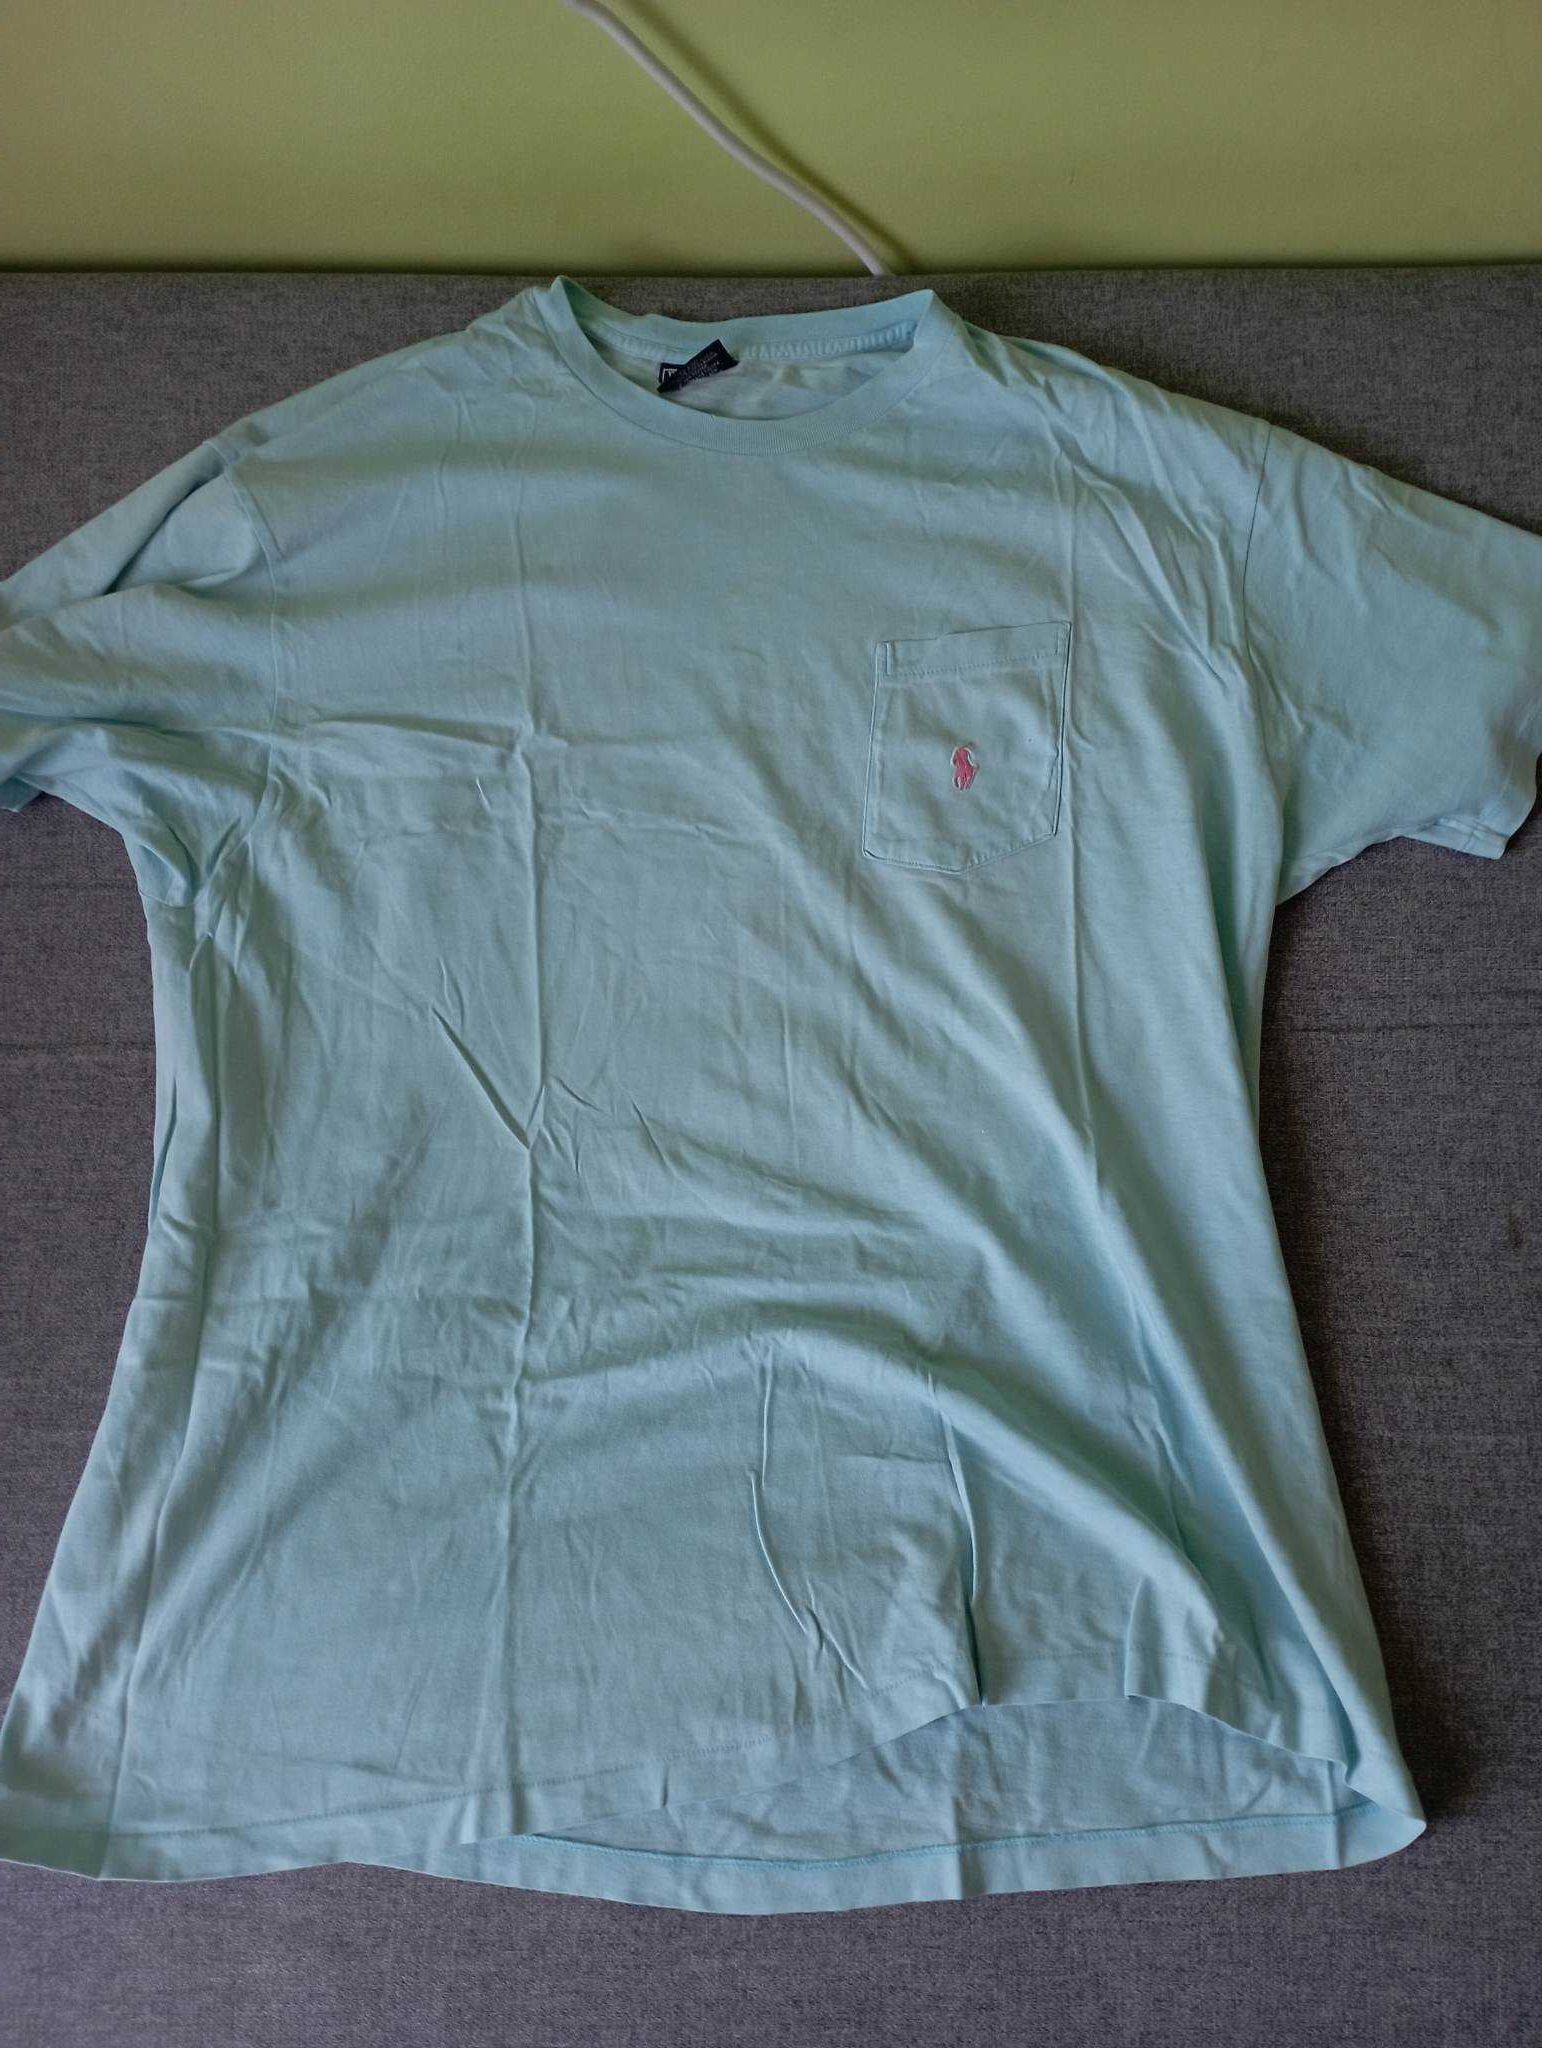 T-shirt męski polo by Ralph lauren oryginalny niebieski rozmiar XL